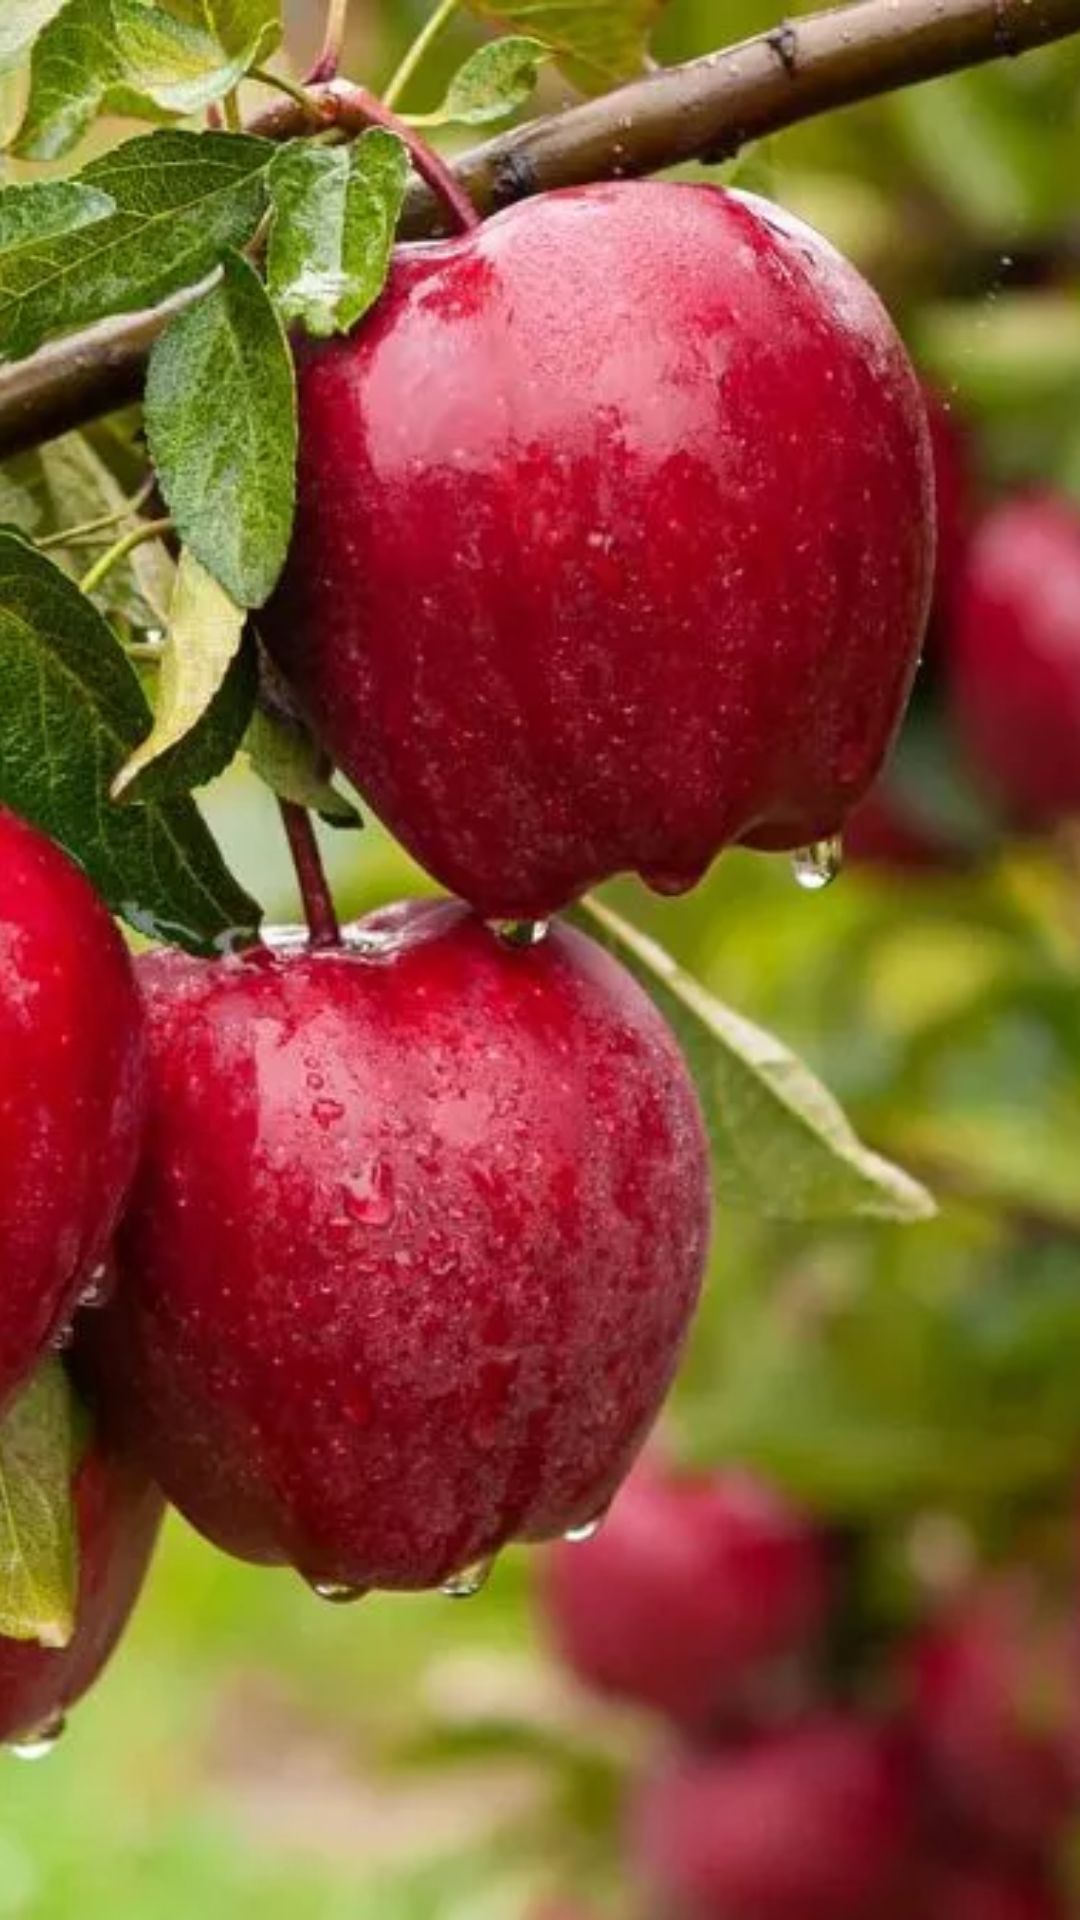 भारत के किस राज्य में सेब का सबसे ज्यादा उत्पादन होता है? 